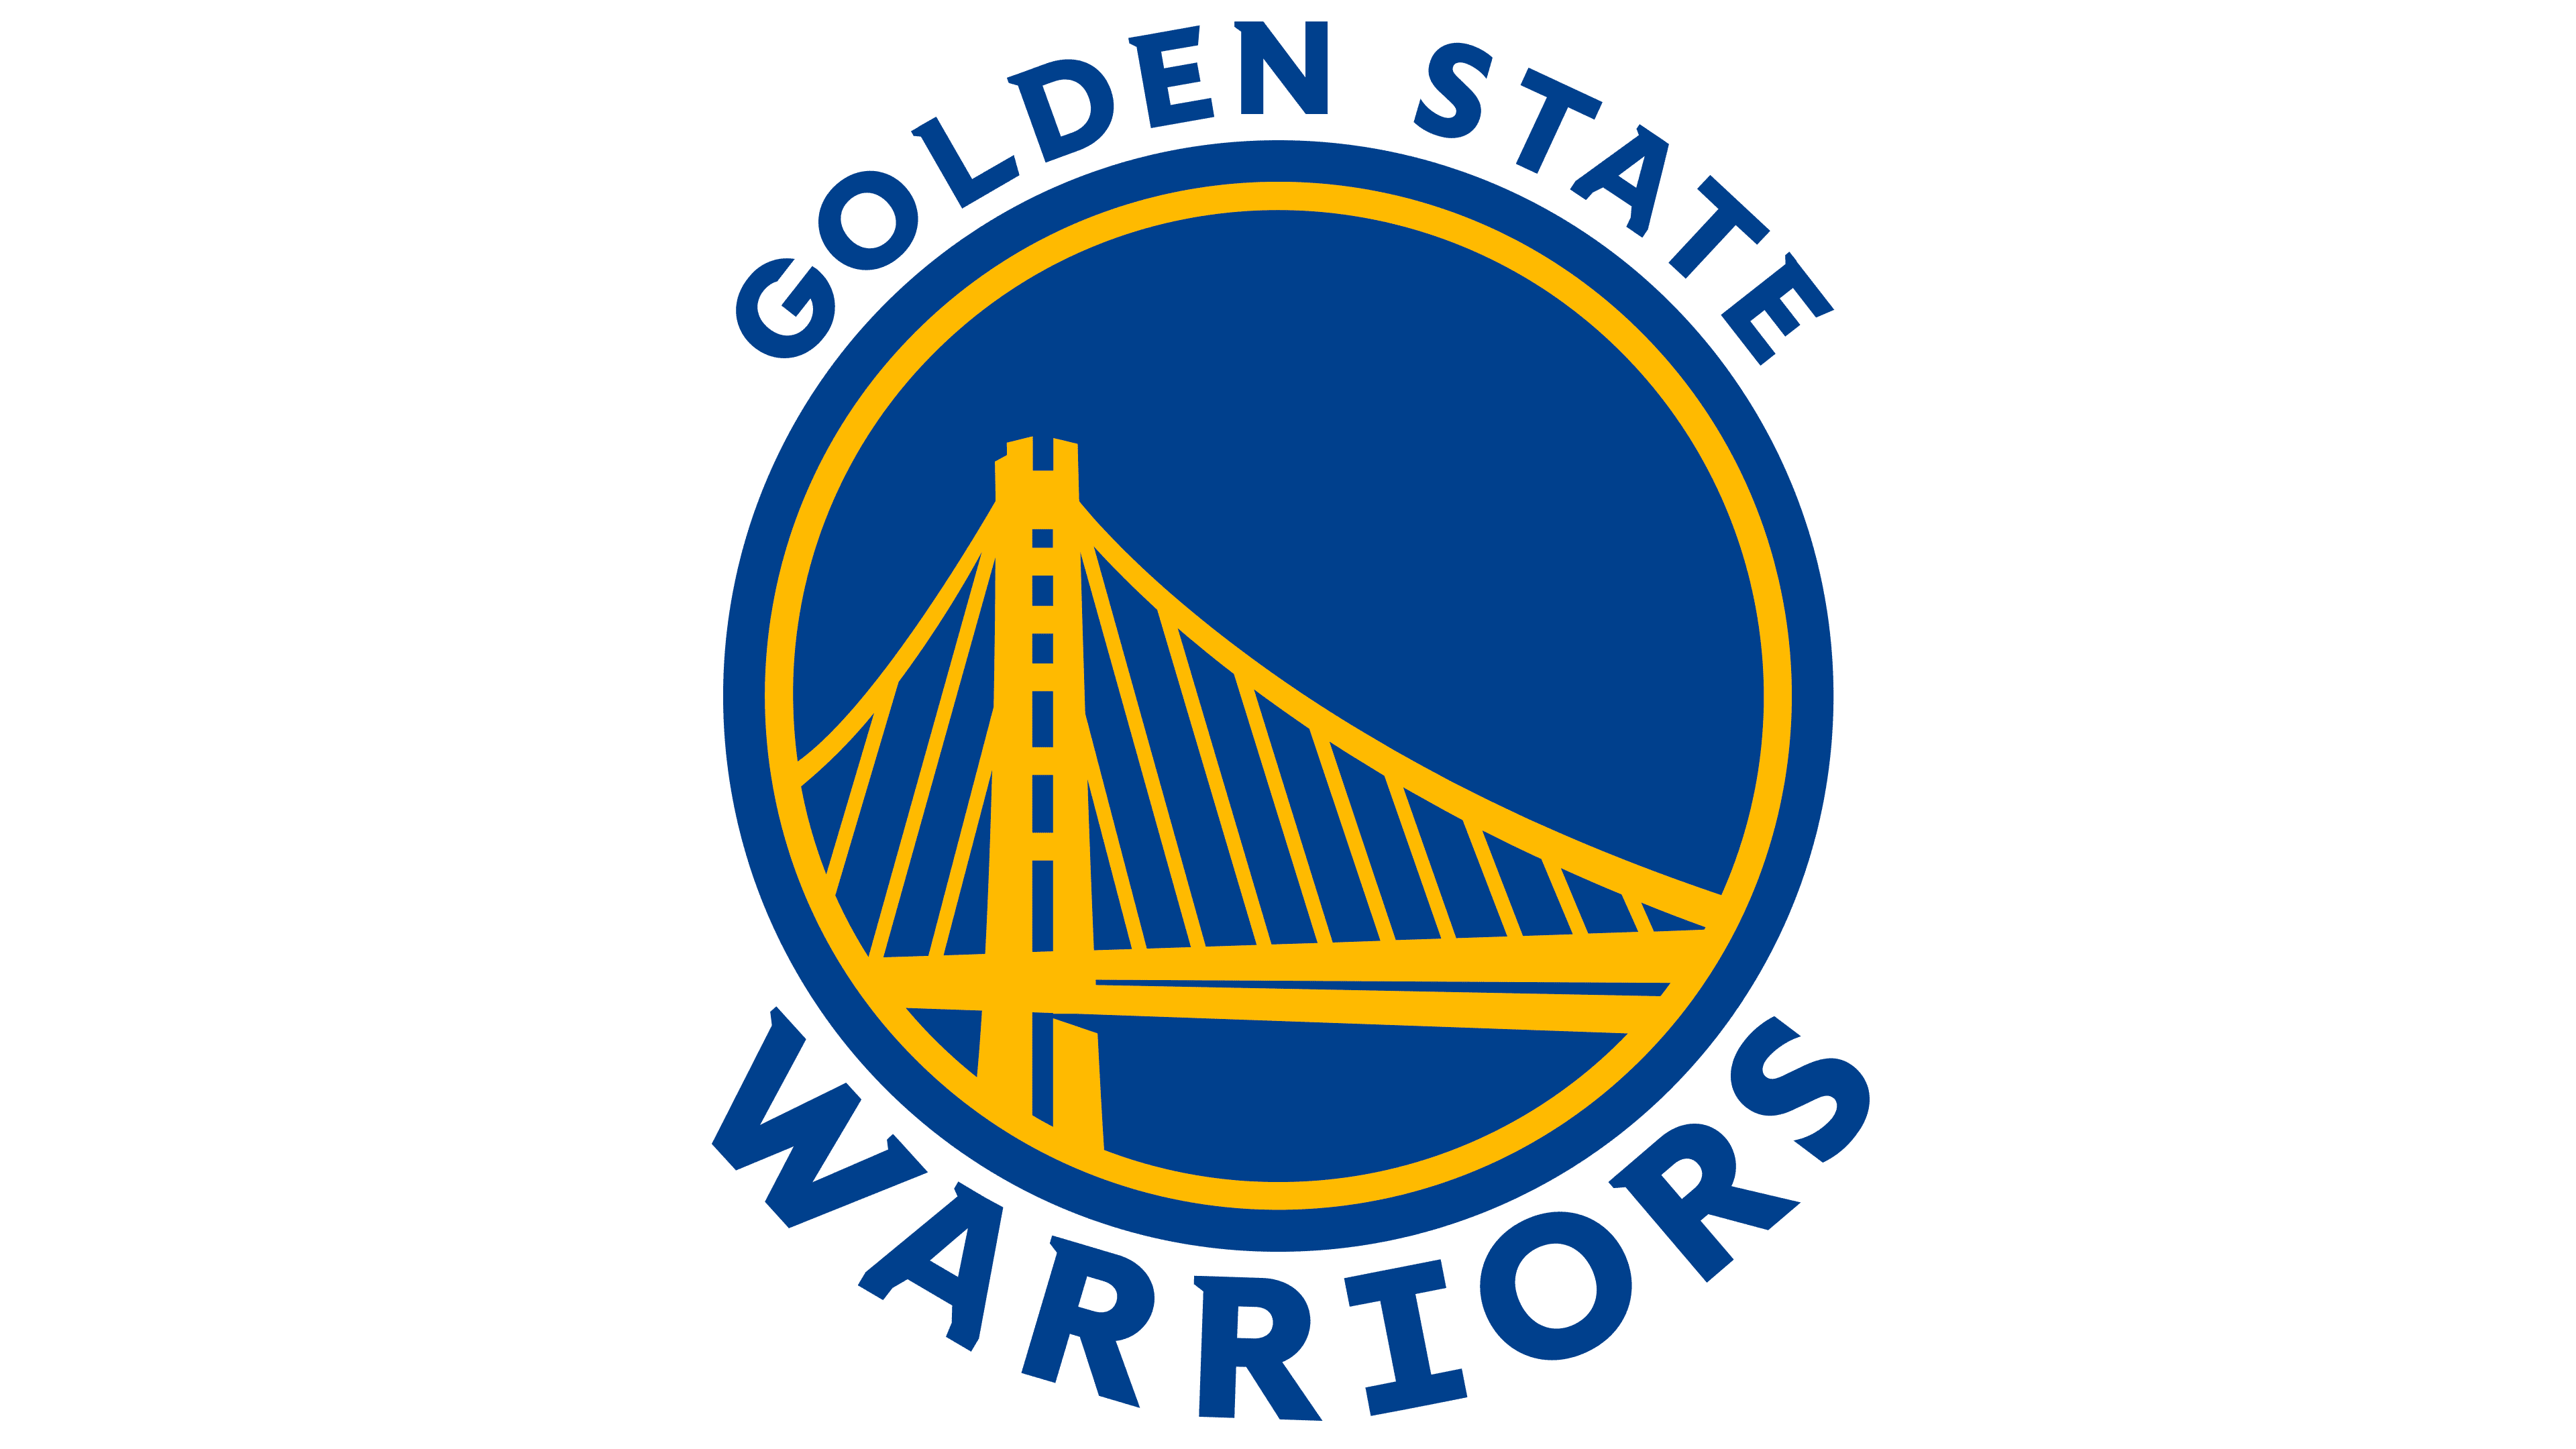 NEW YORK, USA, JUN 18, 2020: Golden State Warriors logo of